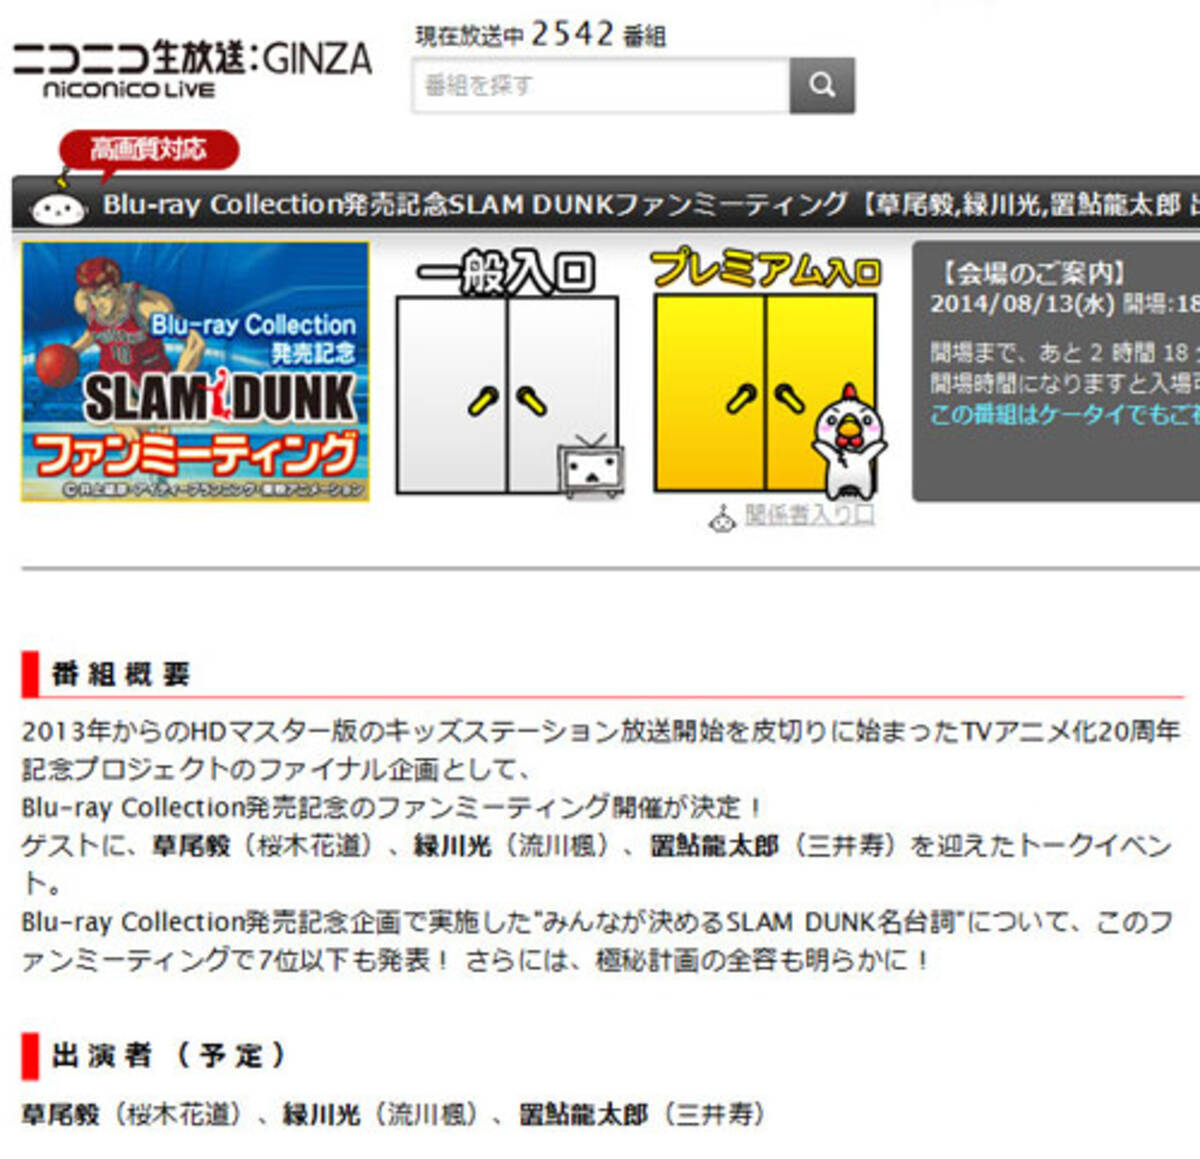 あの桜木花道 流川楓 三井寿の中の人が登場 Slam Dunk ファンミーティングがニコ生で 14年8月13日 エキサイトニュース